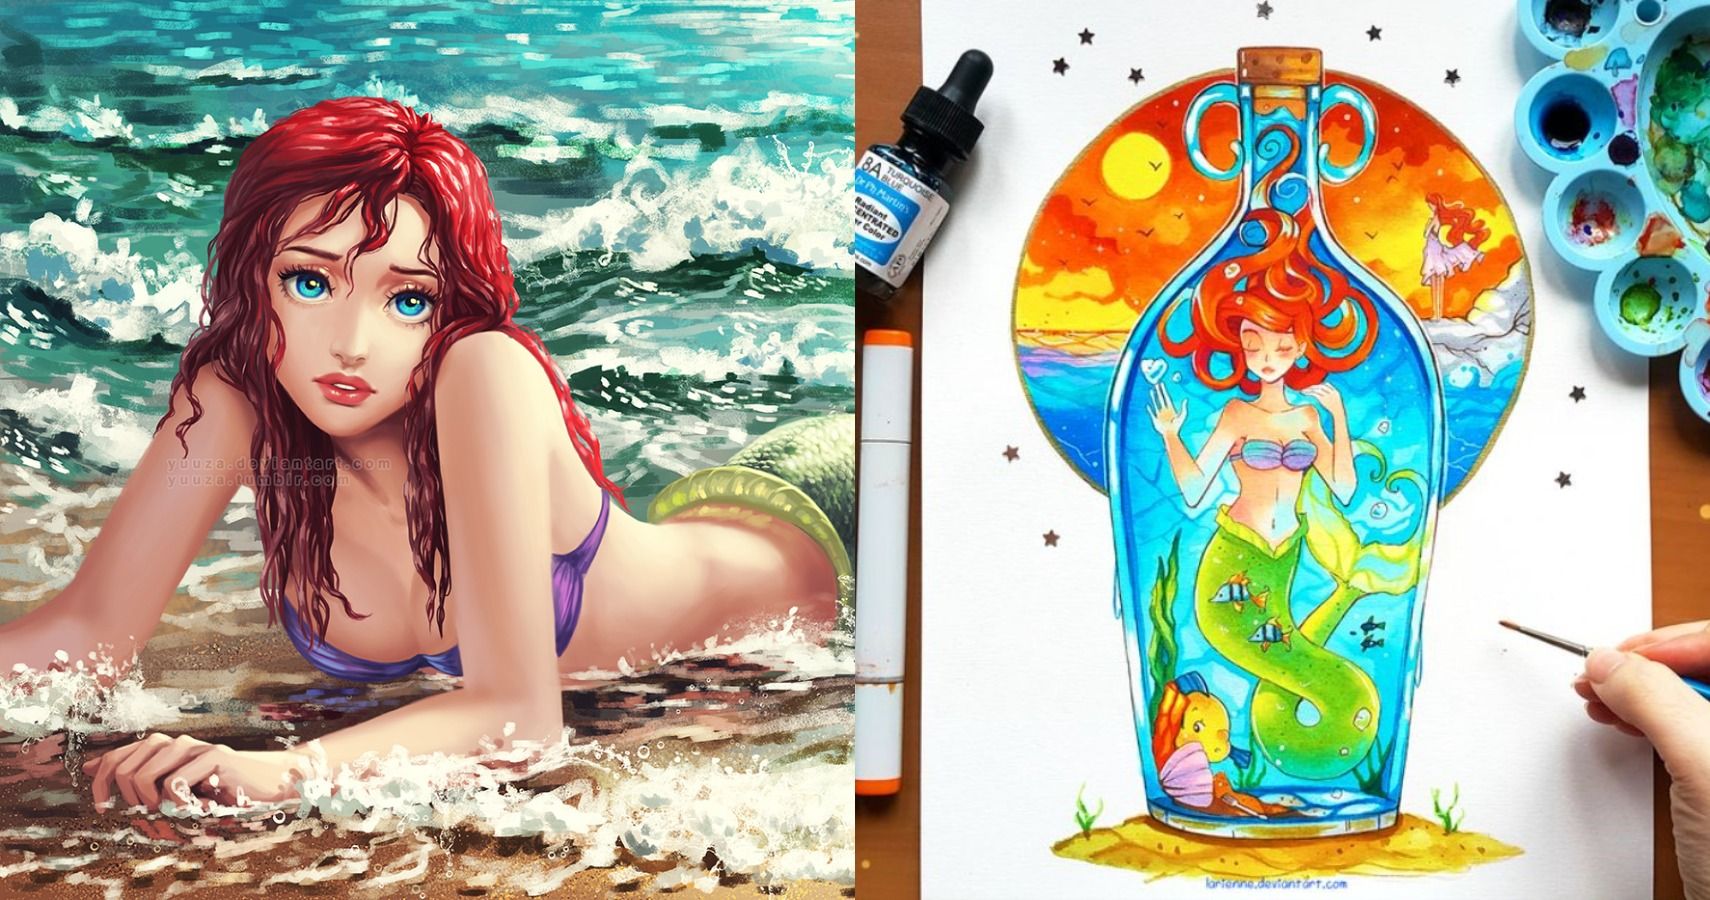 Disneys Little Mermaid 10 Awesome Fan Art Pieces Of Ariel. 